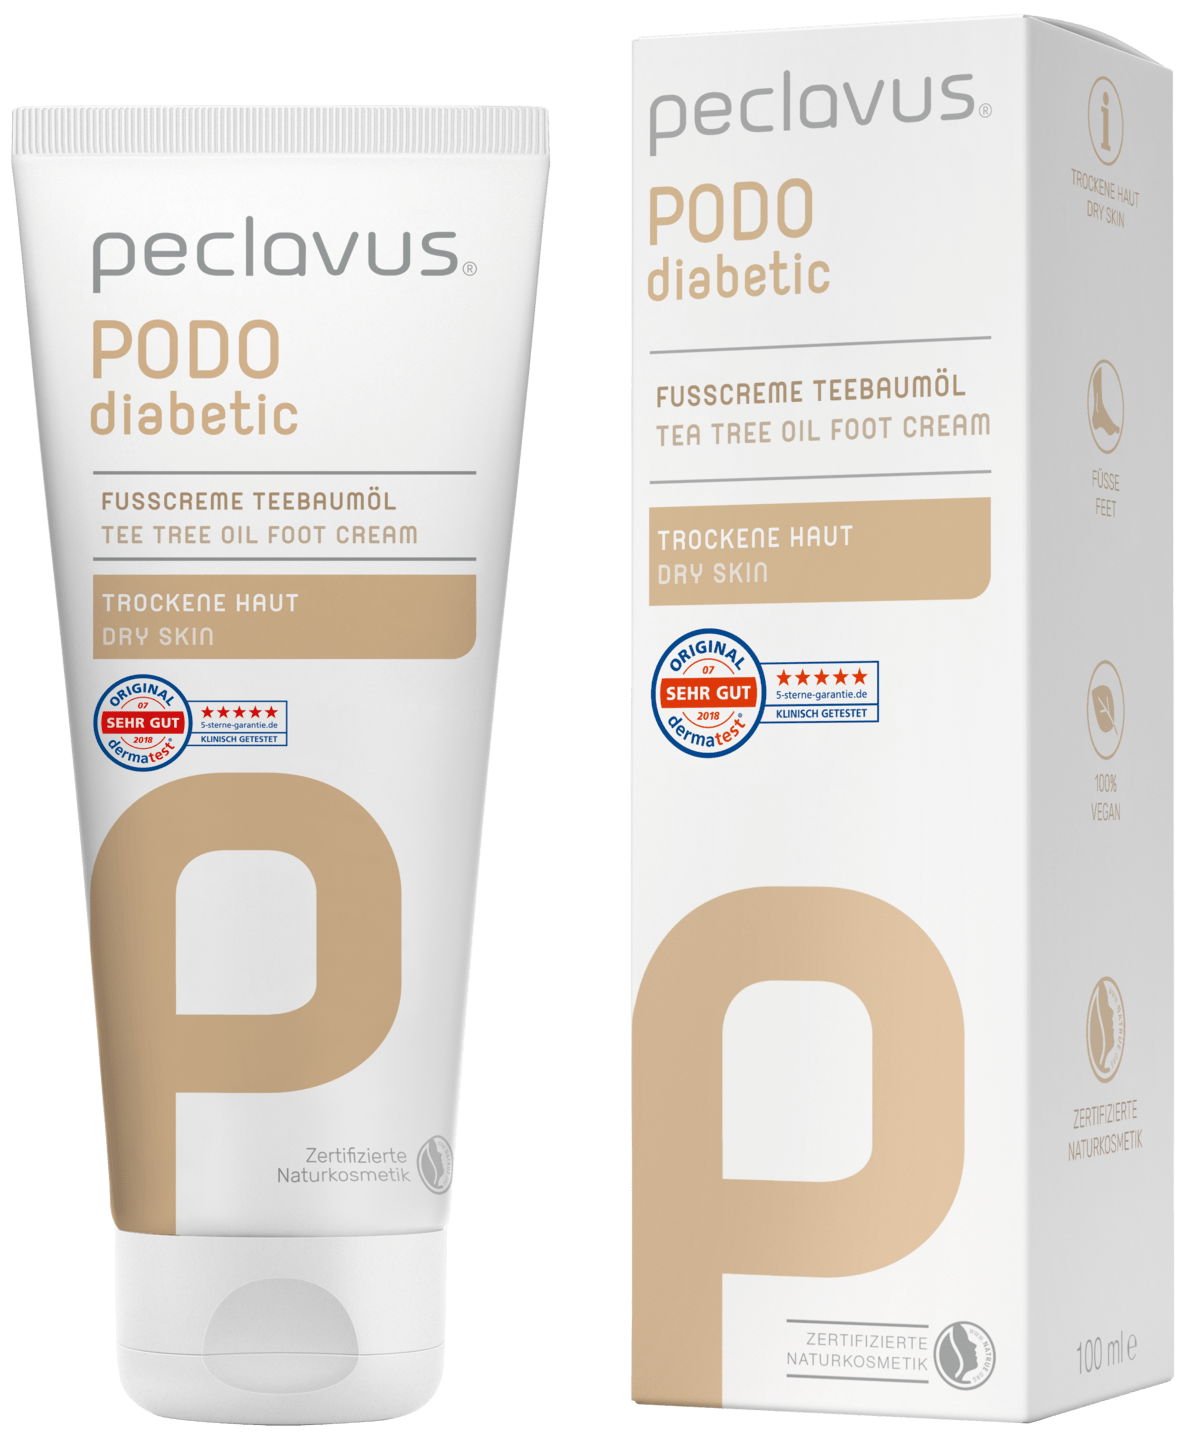 peclavus - Fußcreme Teebaumöl, 100 ml